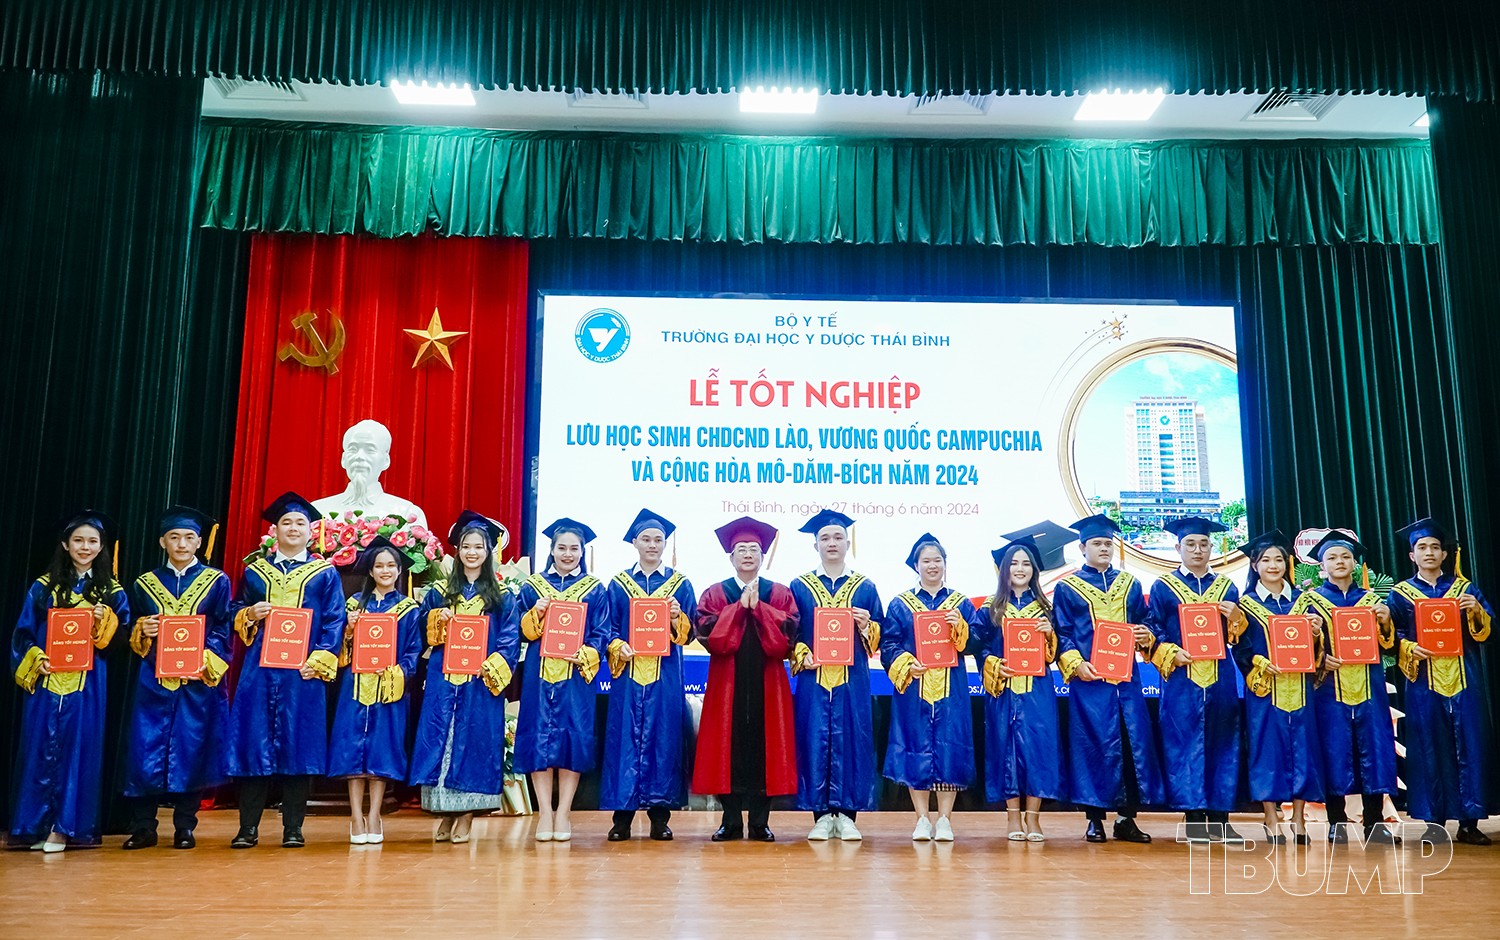 Lãnh đạo Nhà trường trao bằng tốt nghiệp cho các lưu học sinh